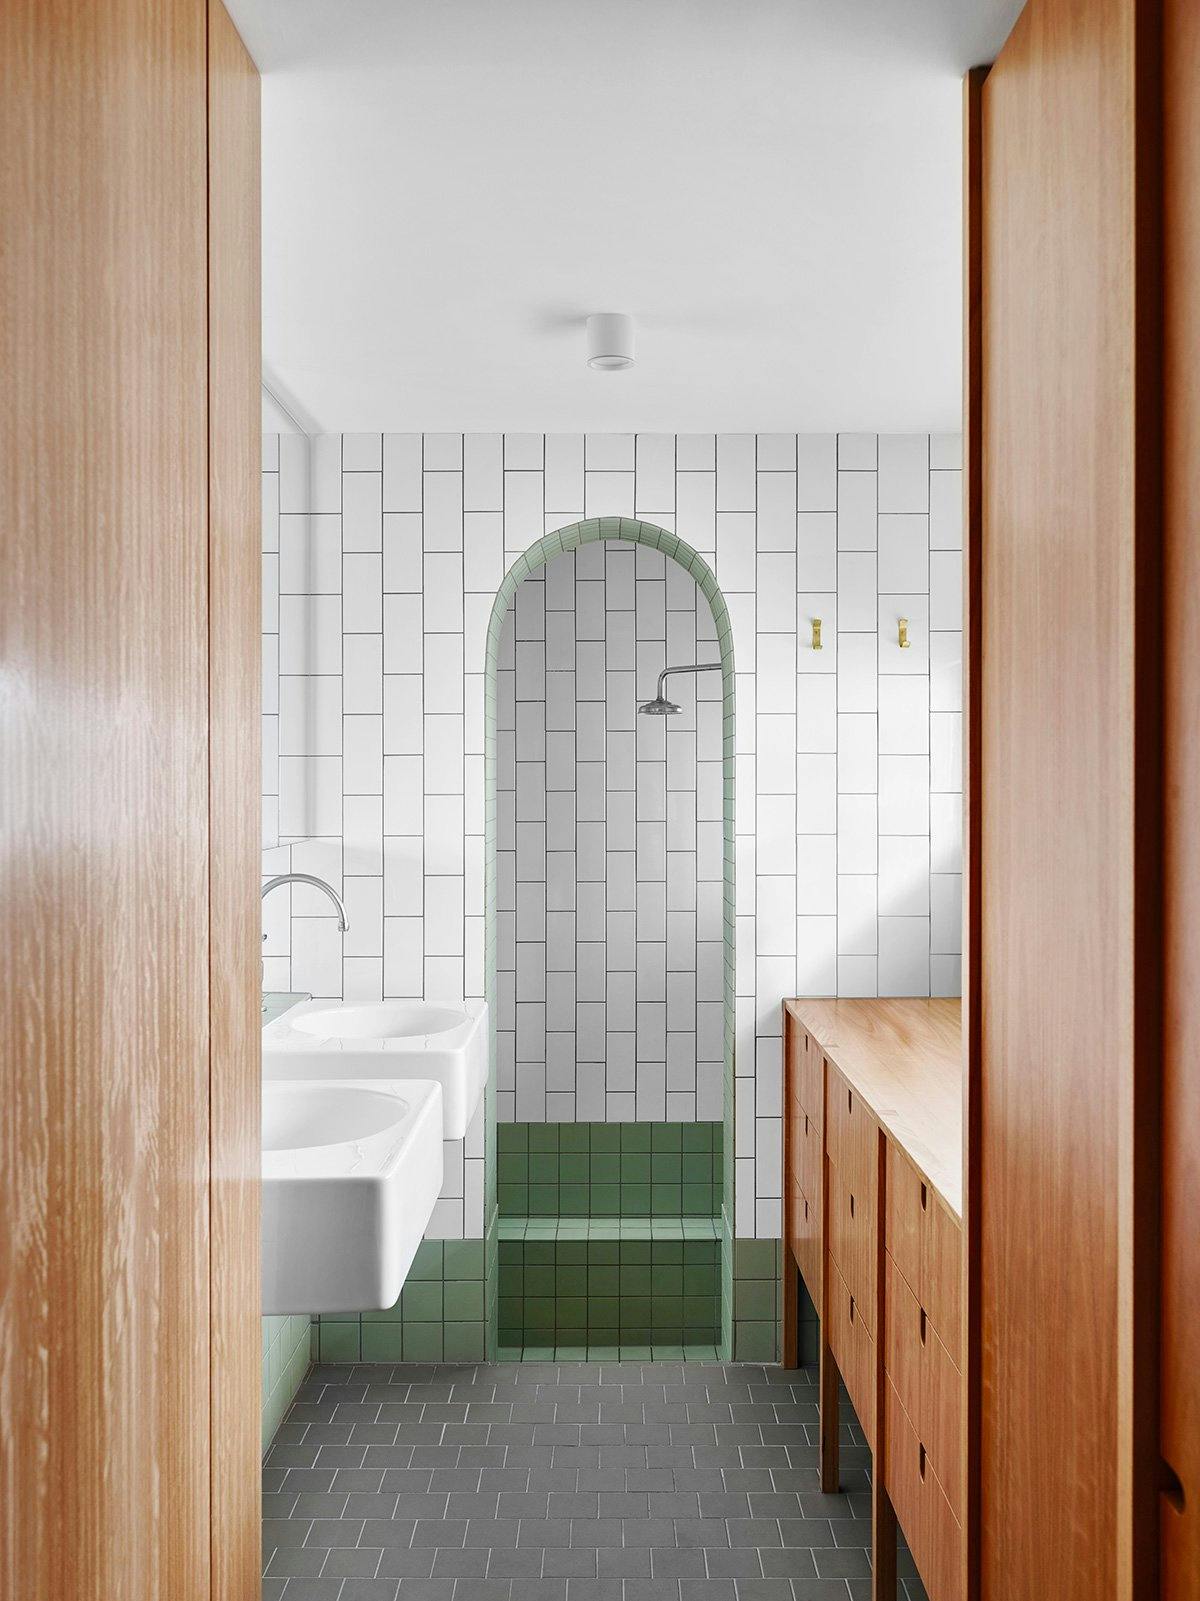 Tôi thích cách phòng tắm này của Owen Architecture thu hút nhiều sự chú ý đến lối vòm bằng cách sử dụng gạch vuông và các cạnh sắc nét ở mọi nơi khác.  #arch #designtrend #interiors #organicmodern #bathroom #tilebathroom #archdoorway